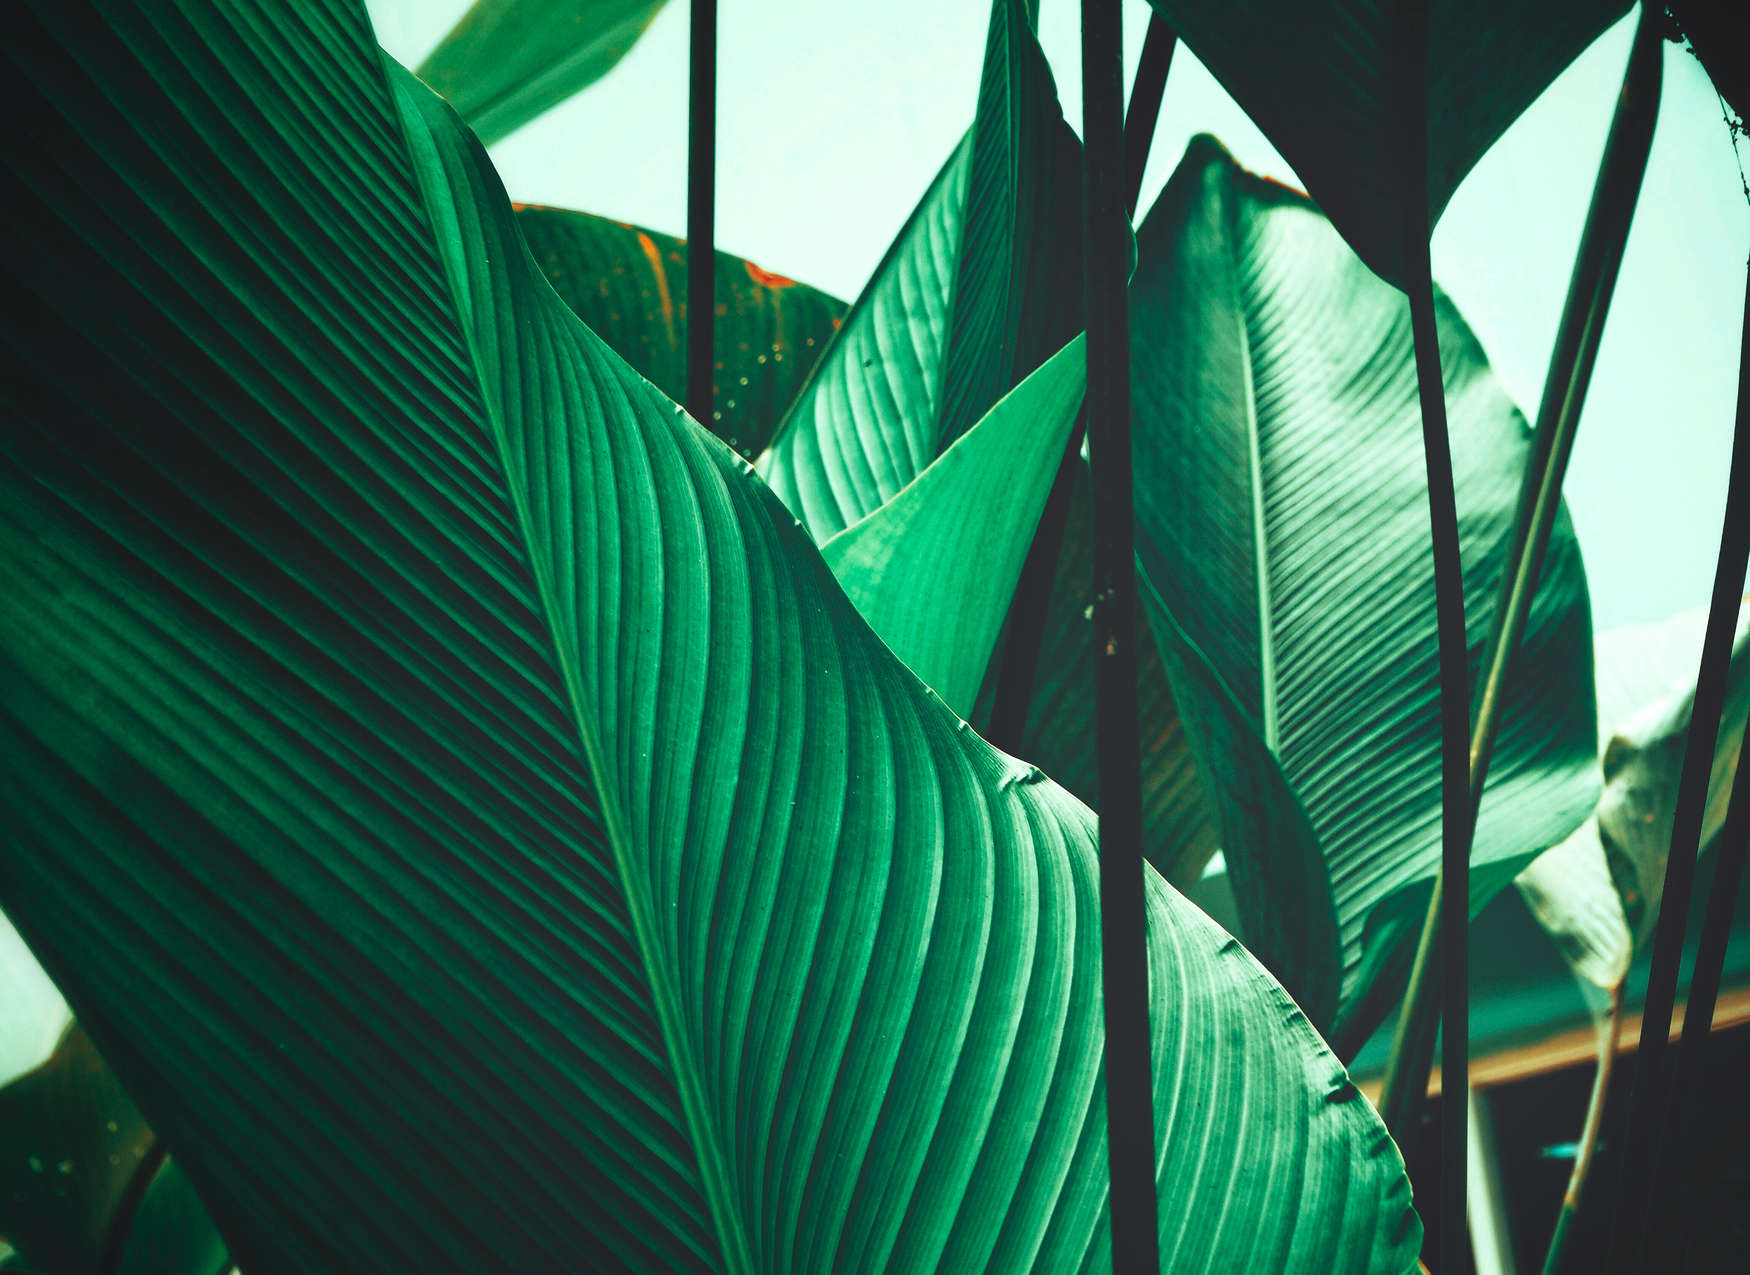             Palm & Bananenblad Onderlaag behang - Groen, Zwart
        